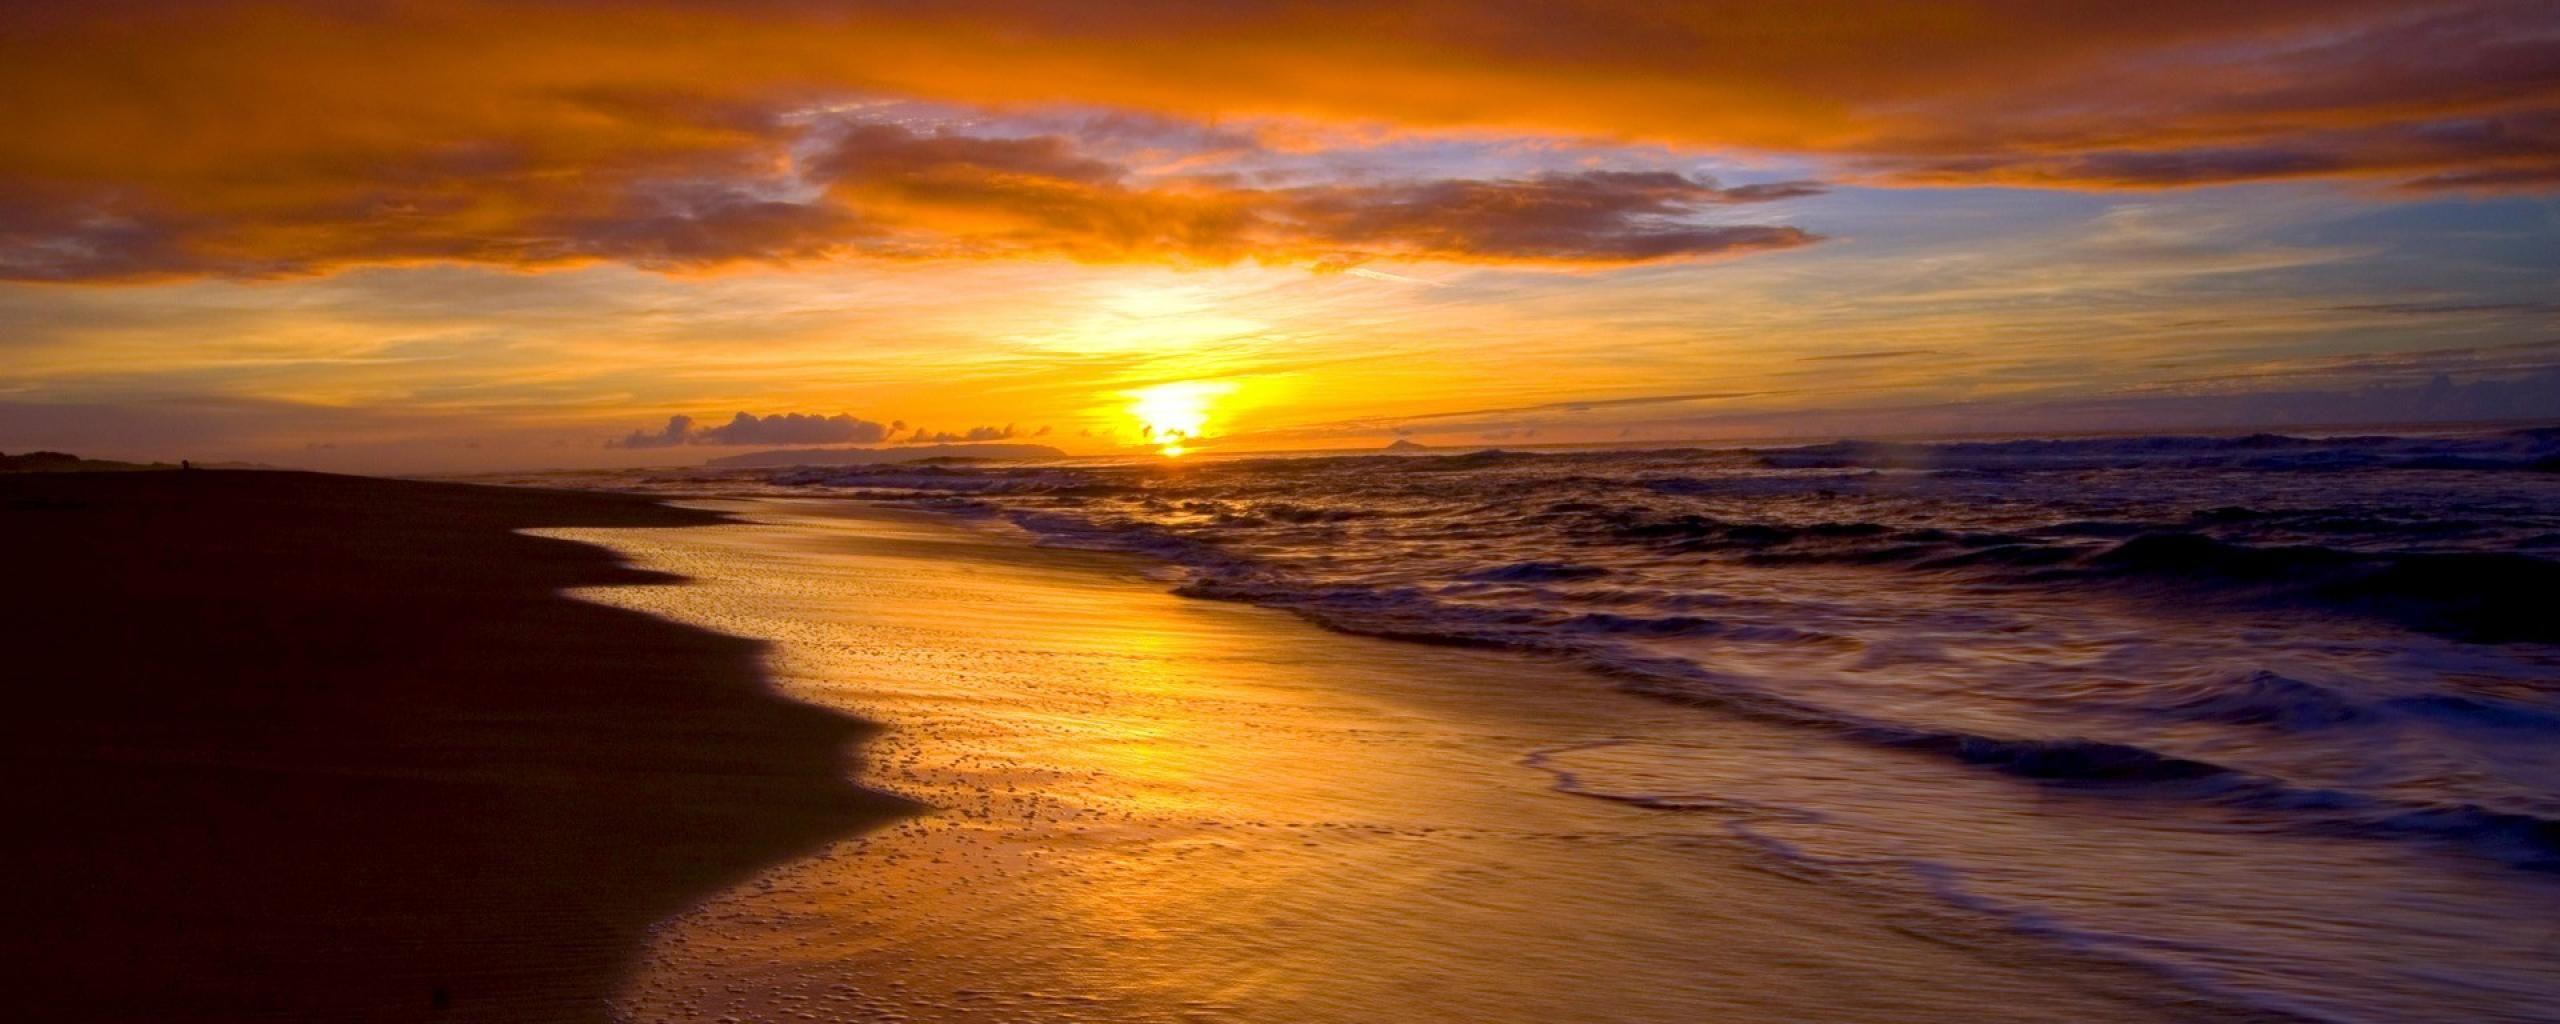 Pint Sunset Beach Wallpaper. Beautiful BeachAuresqueue.com